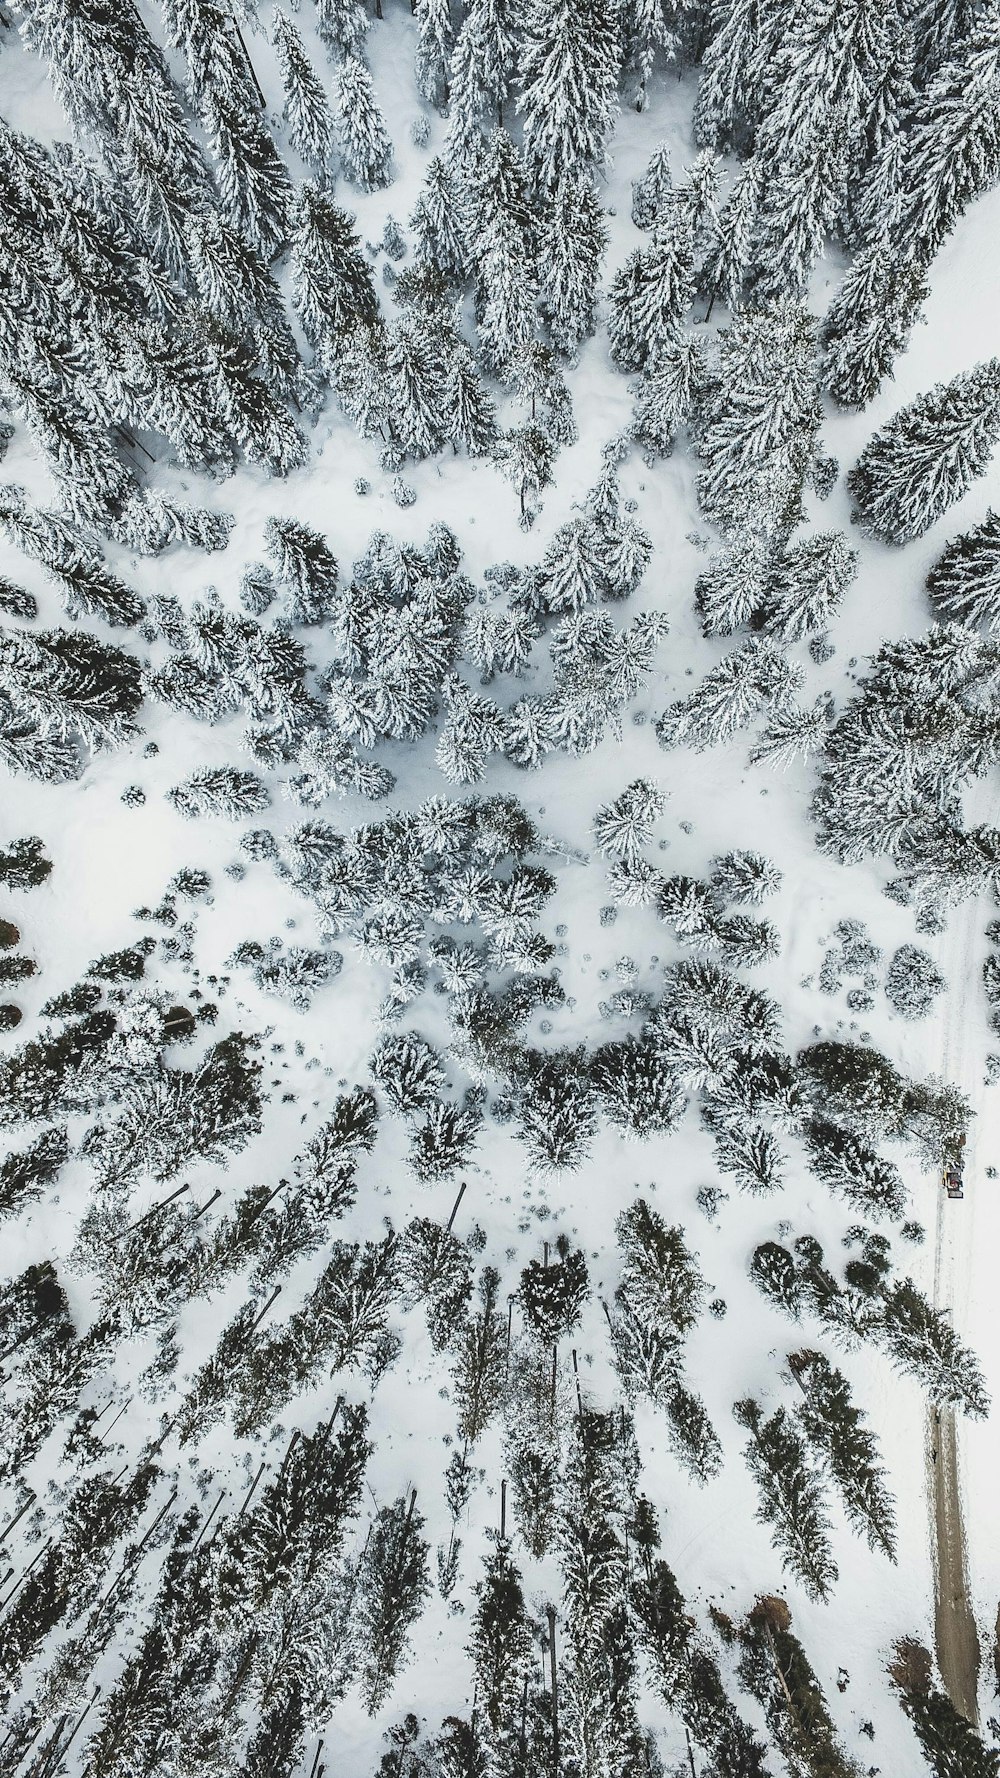 Vista aérea de árboles cubiertos de nieve